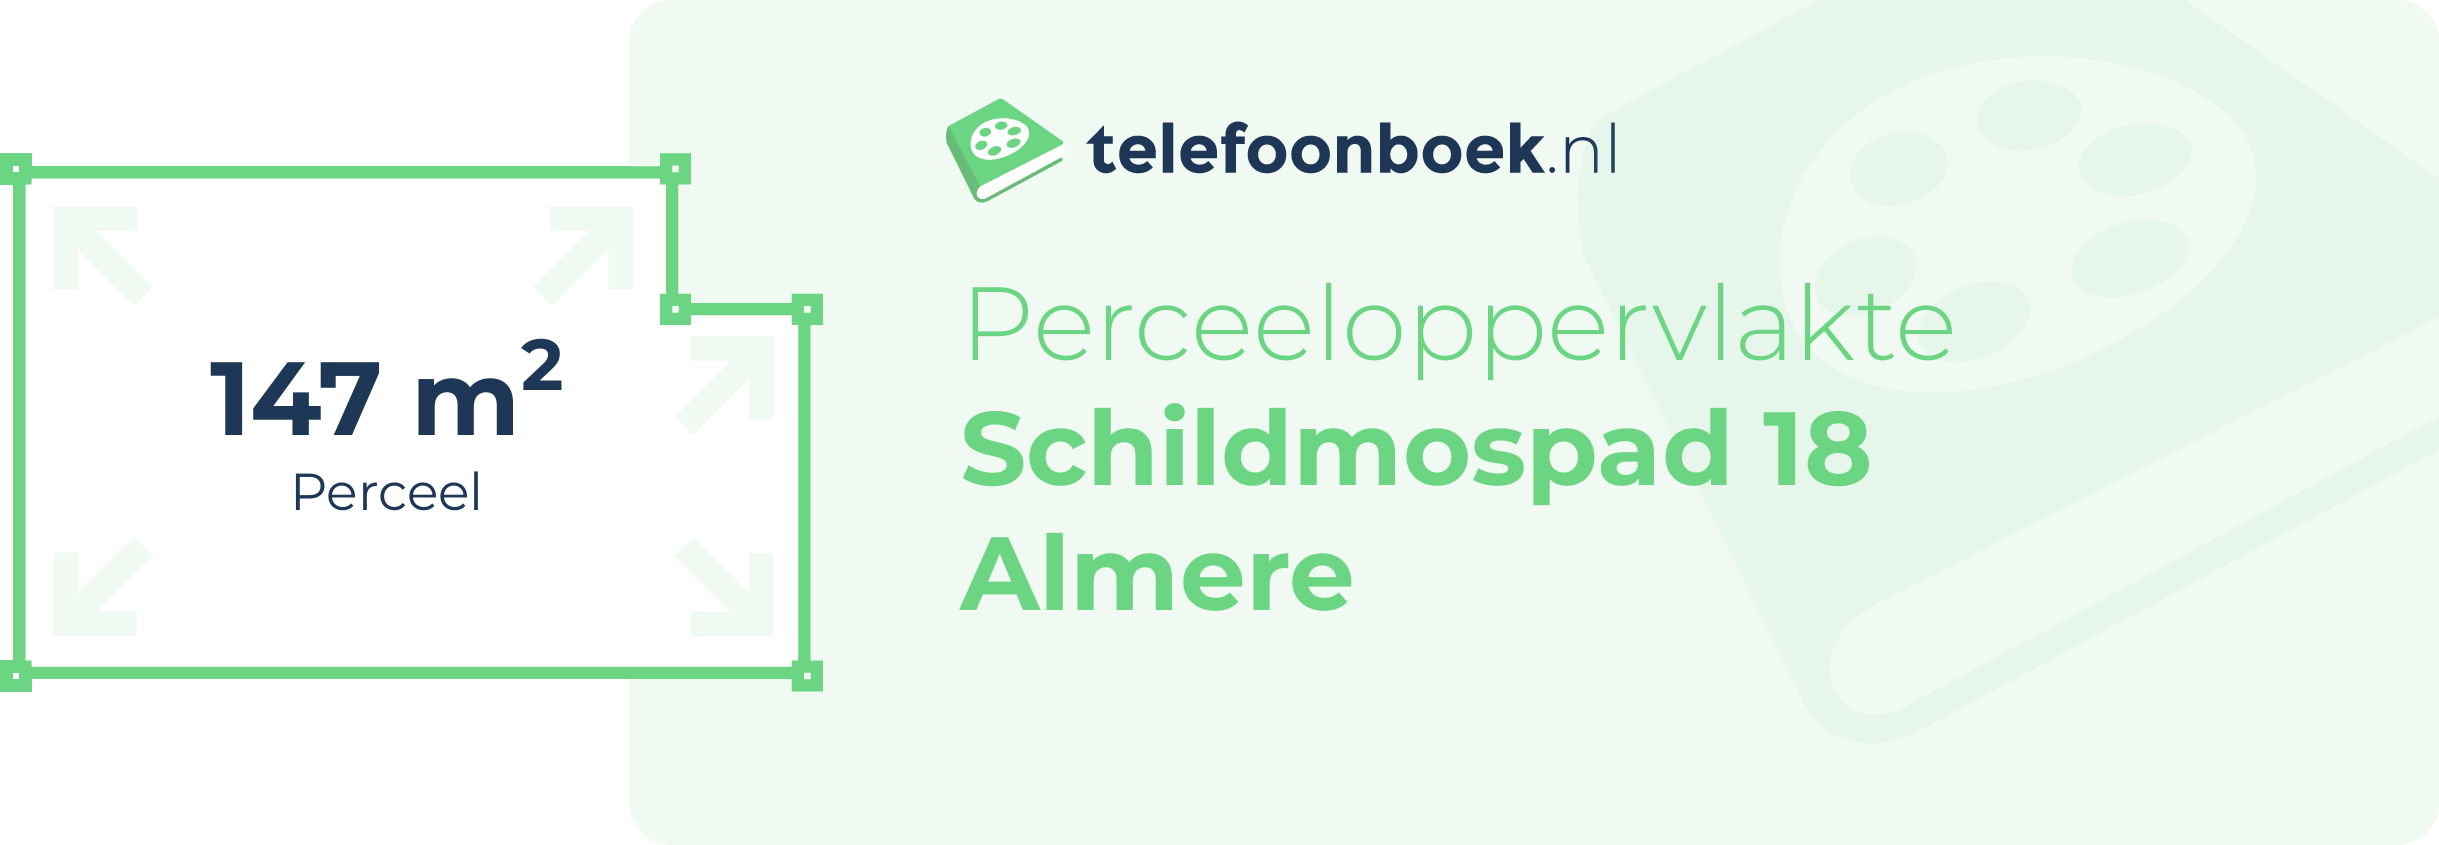 Perceeloppervlakte Schildmospad 18 Almere